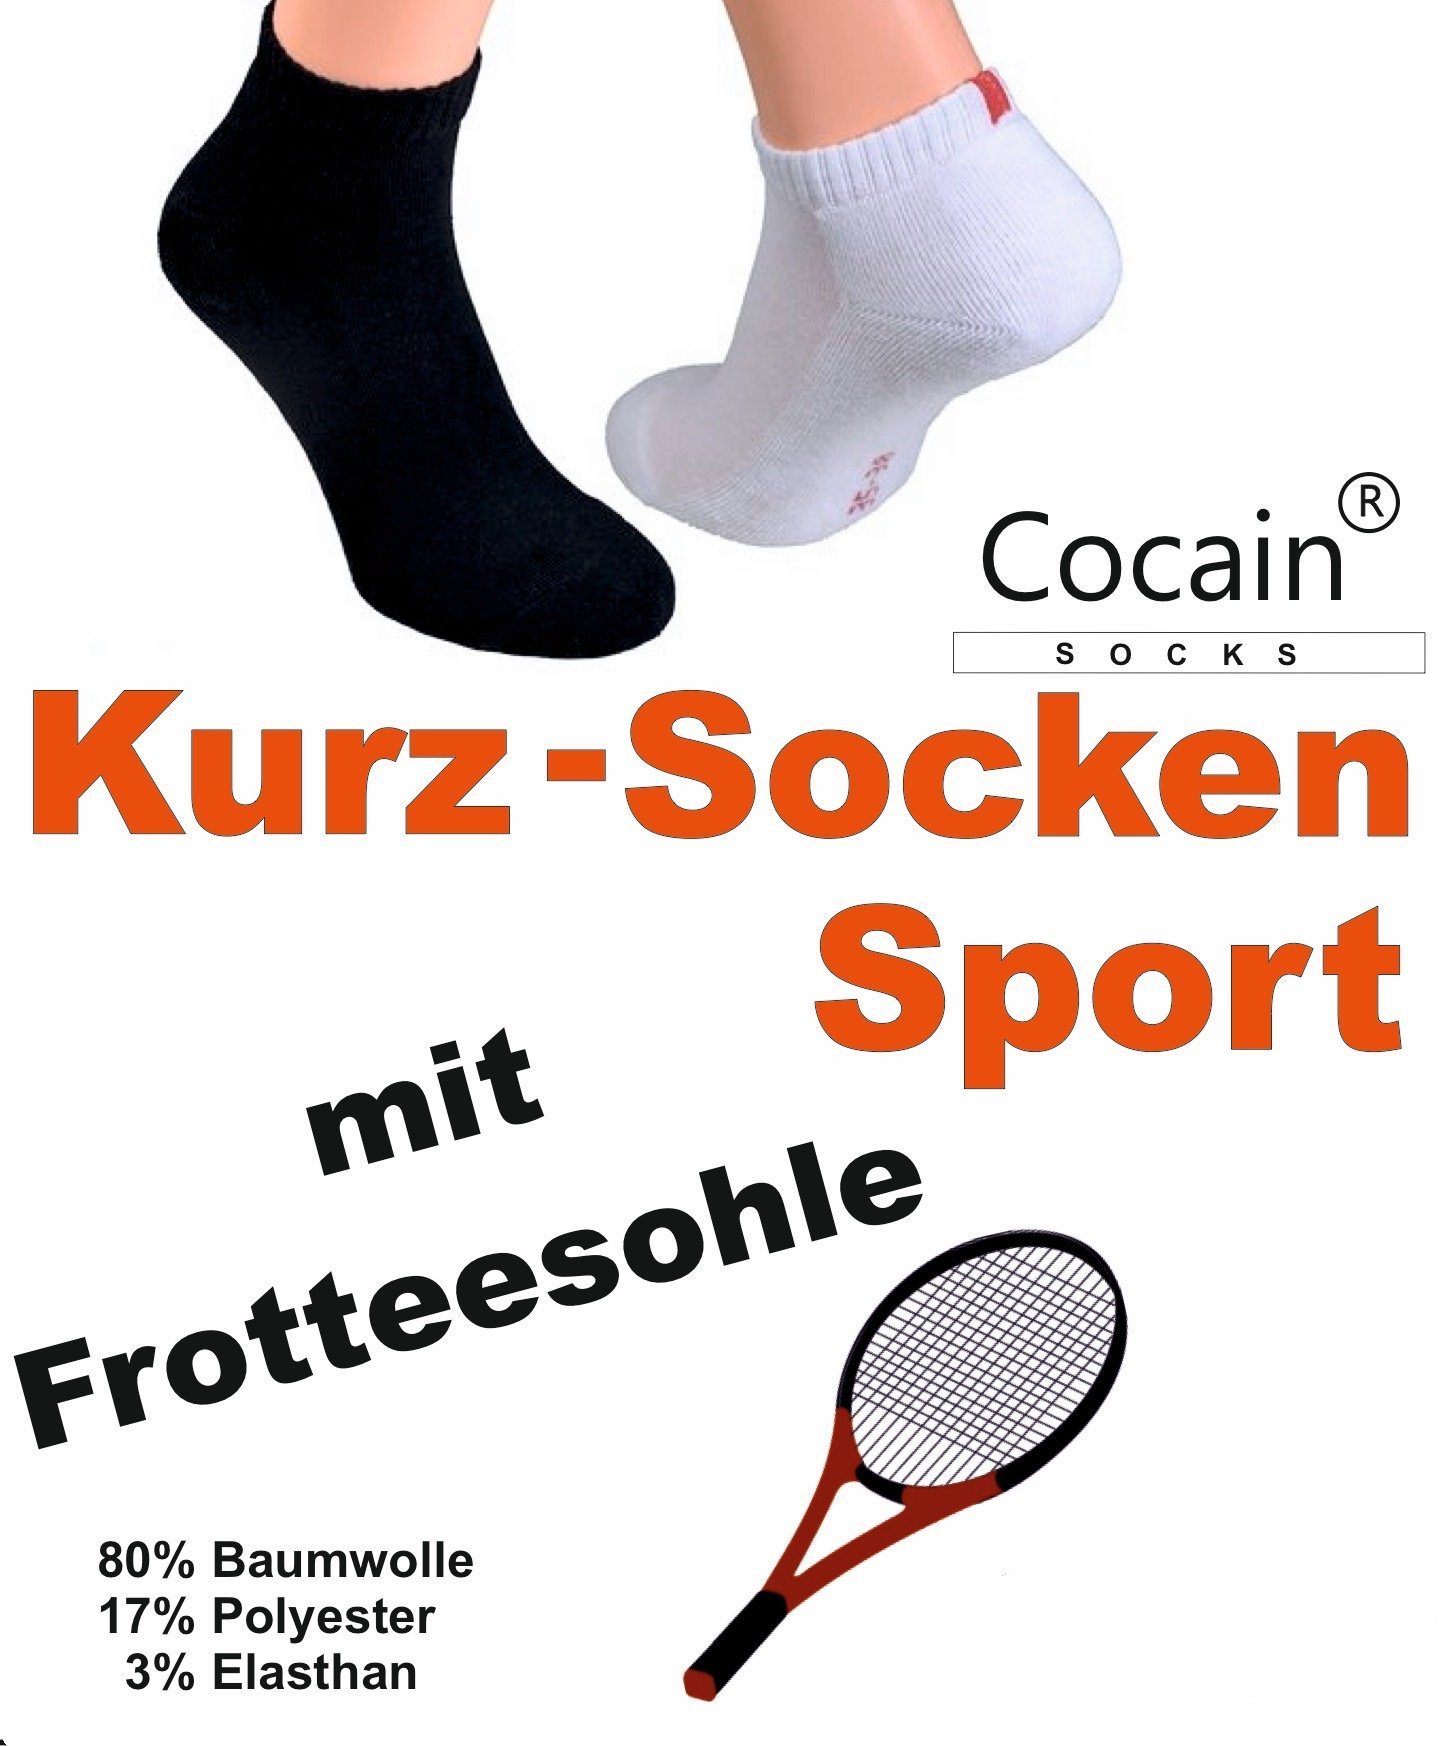 Cocain Frotteesohle schwarz (6-Paar) Herren Kurzsocken Kurzsocken Damen underwear weiß